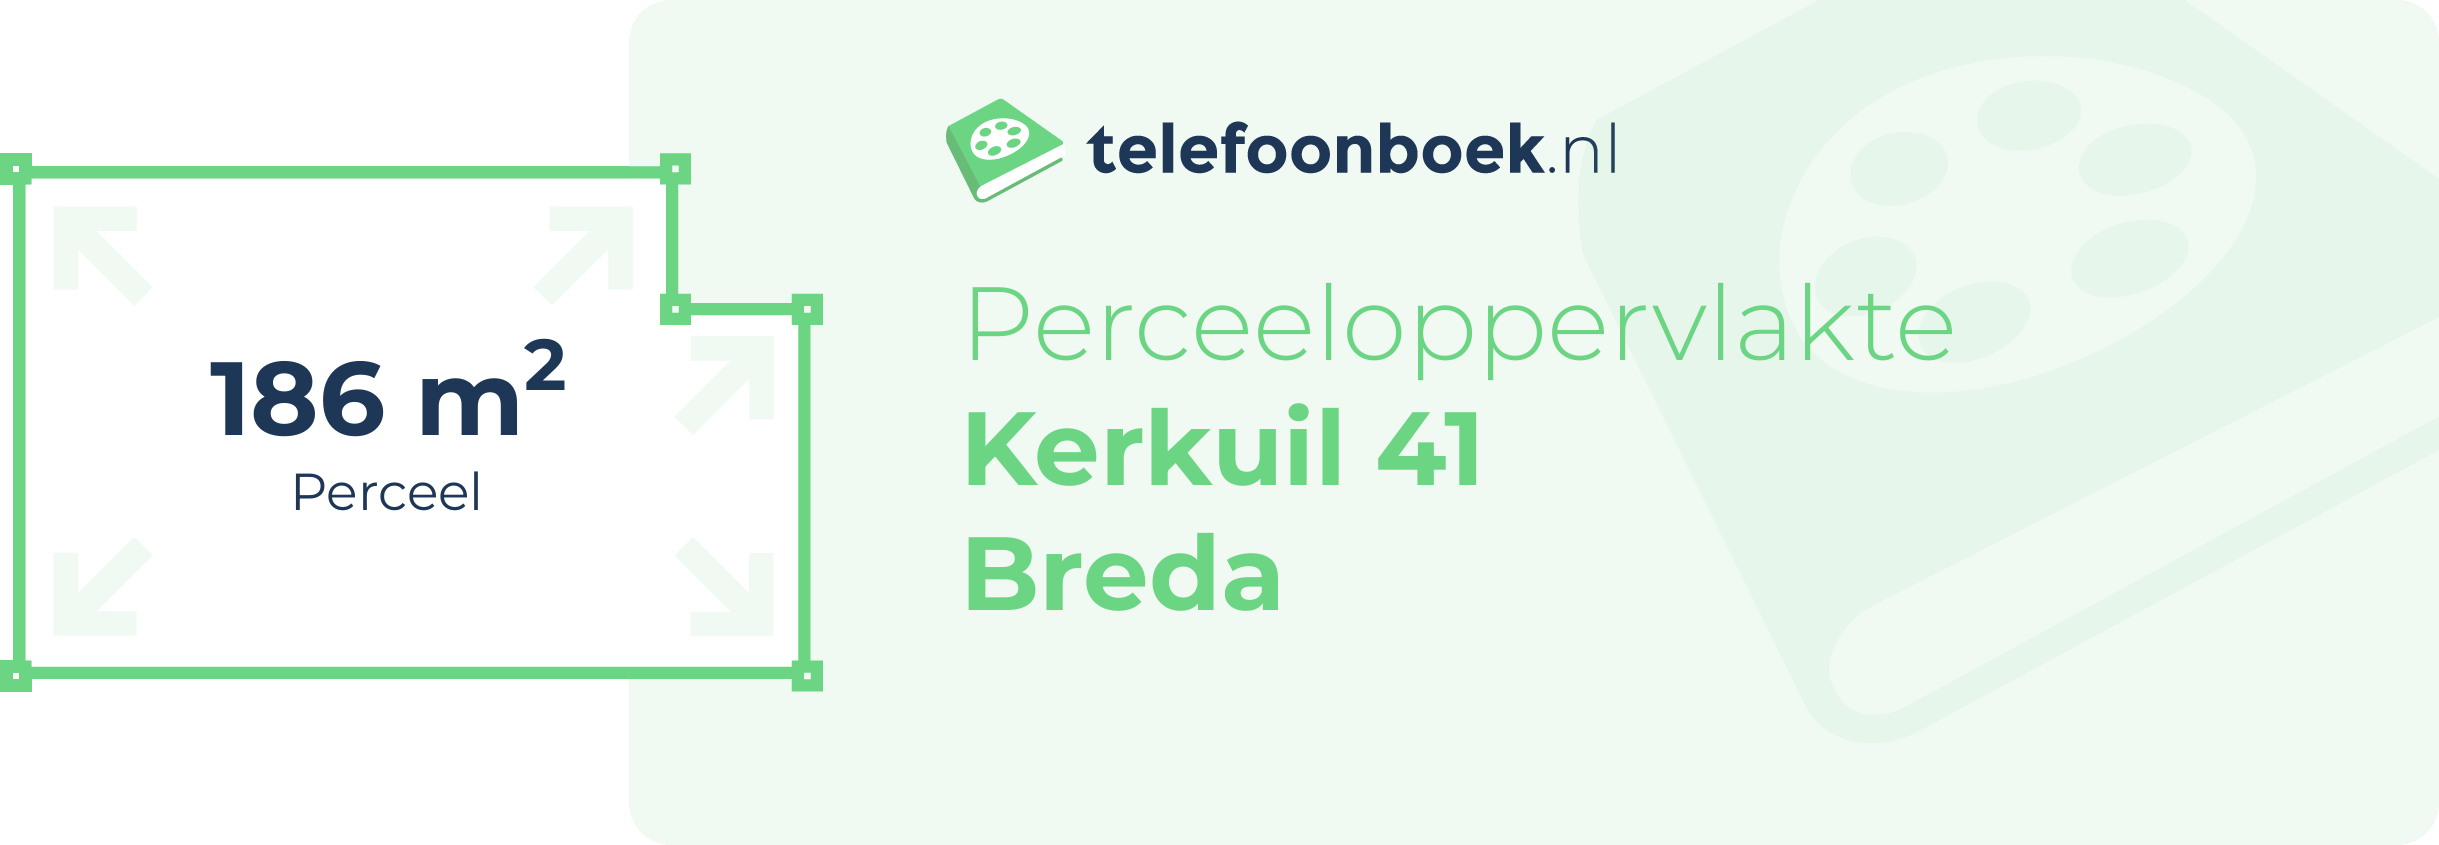 Perceeloppervlakte Kerkuil 41 Breda